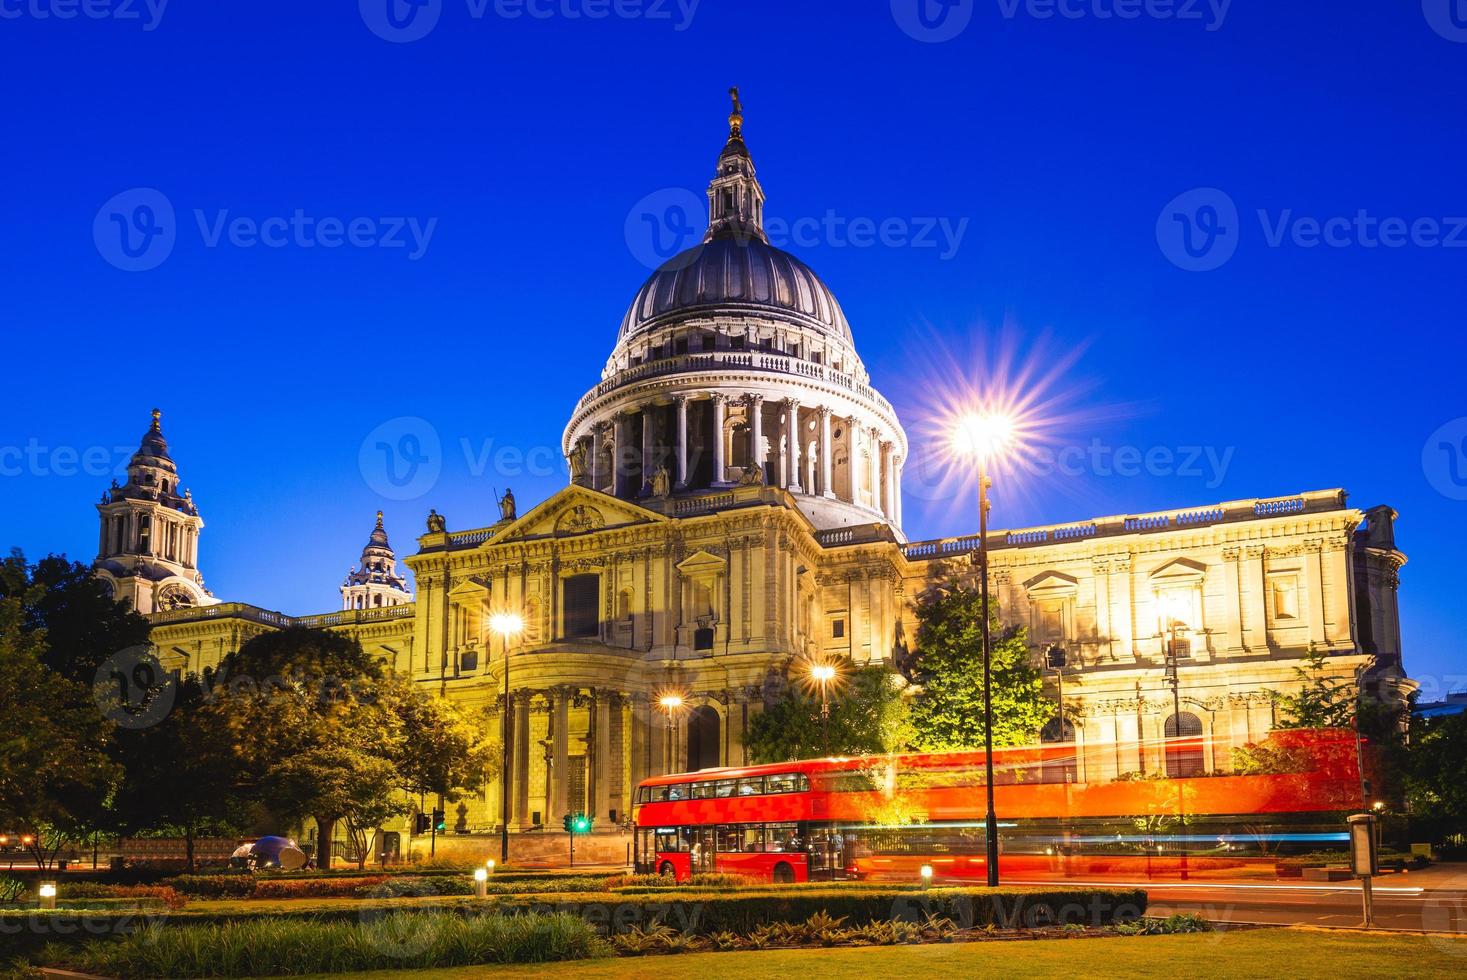 Vue nocturne de la cathédrale St Paul à Londres, Royaume-Uni photo